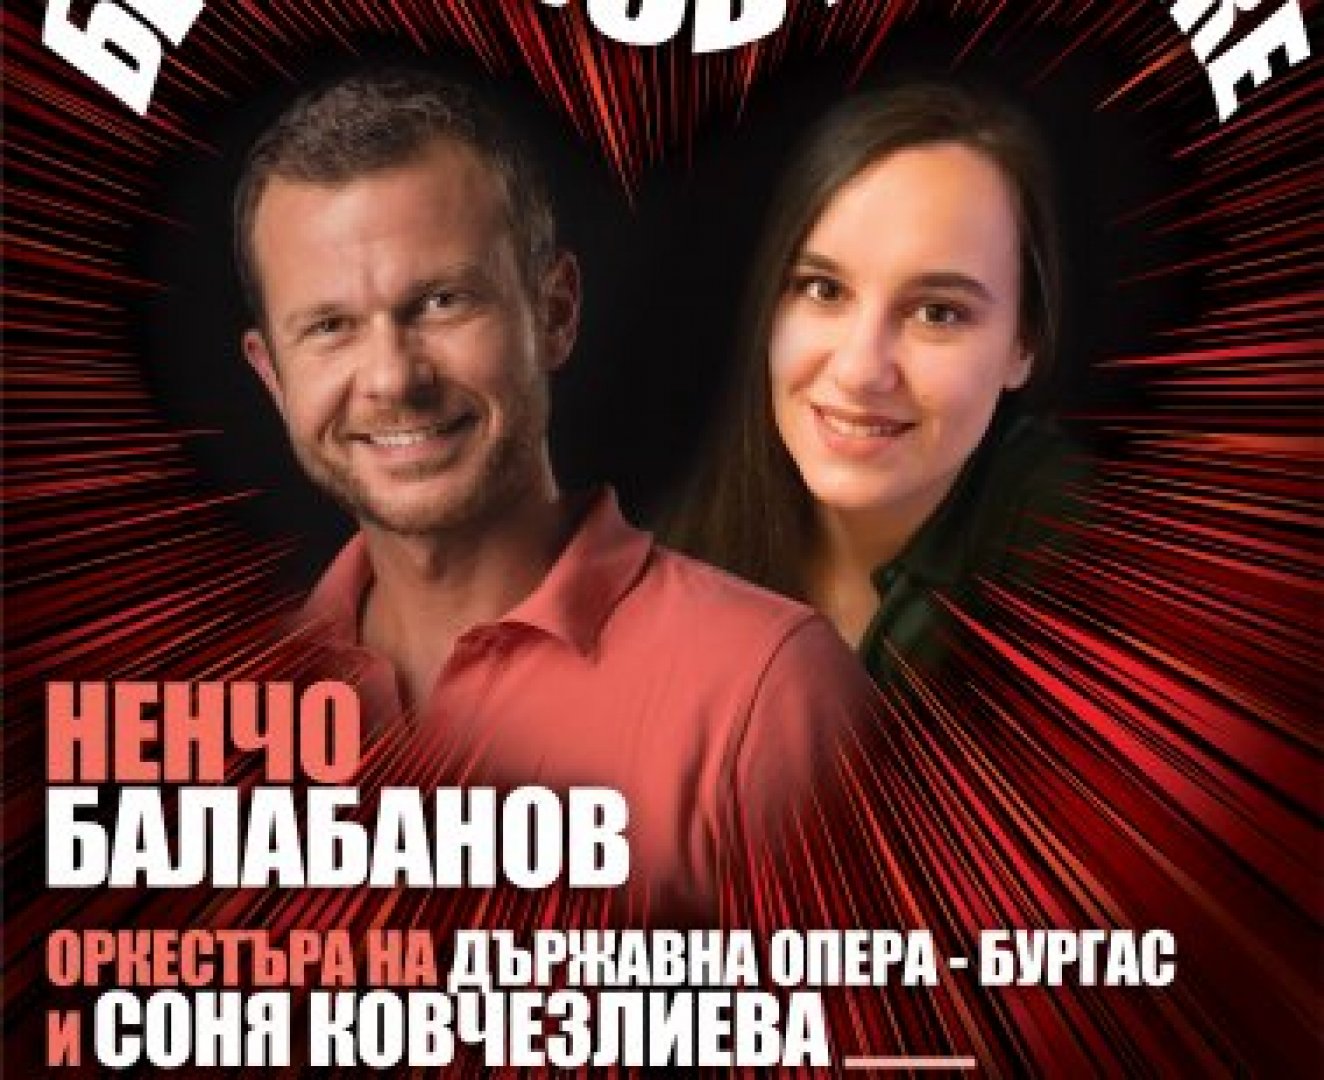  Премиера на концертния спектакъл “Без любов не може” на бургаска сцена  - E-Burgas.com